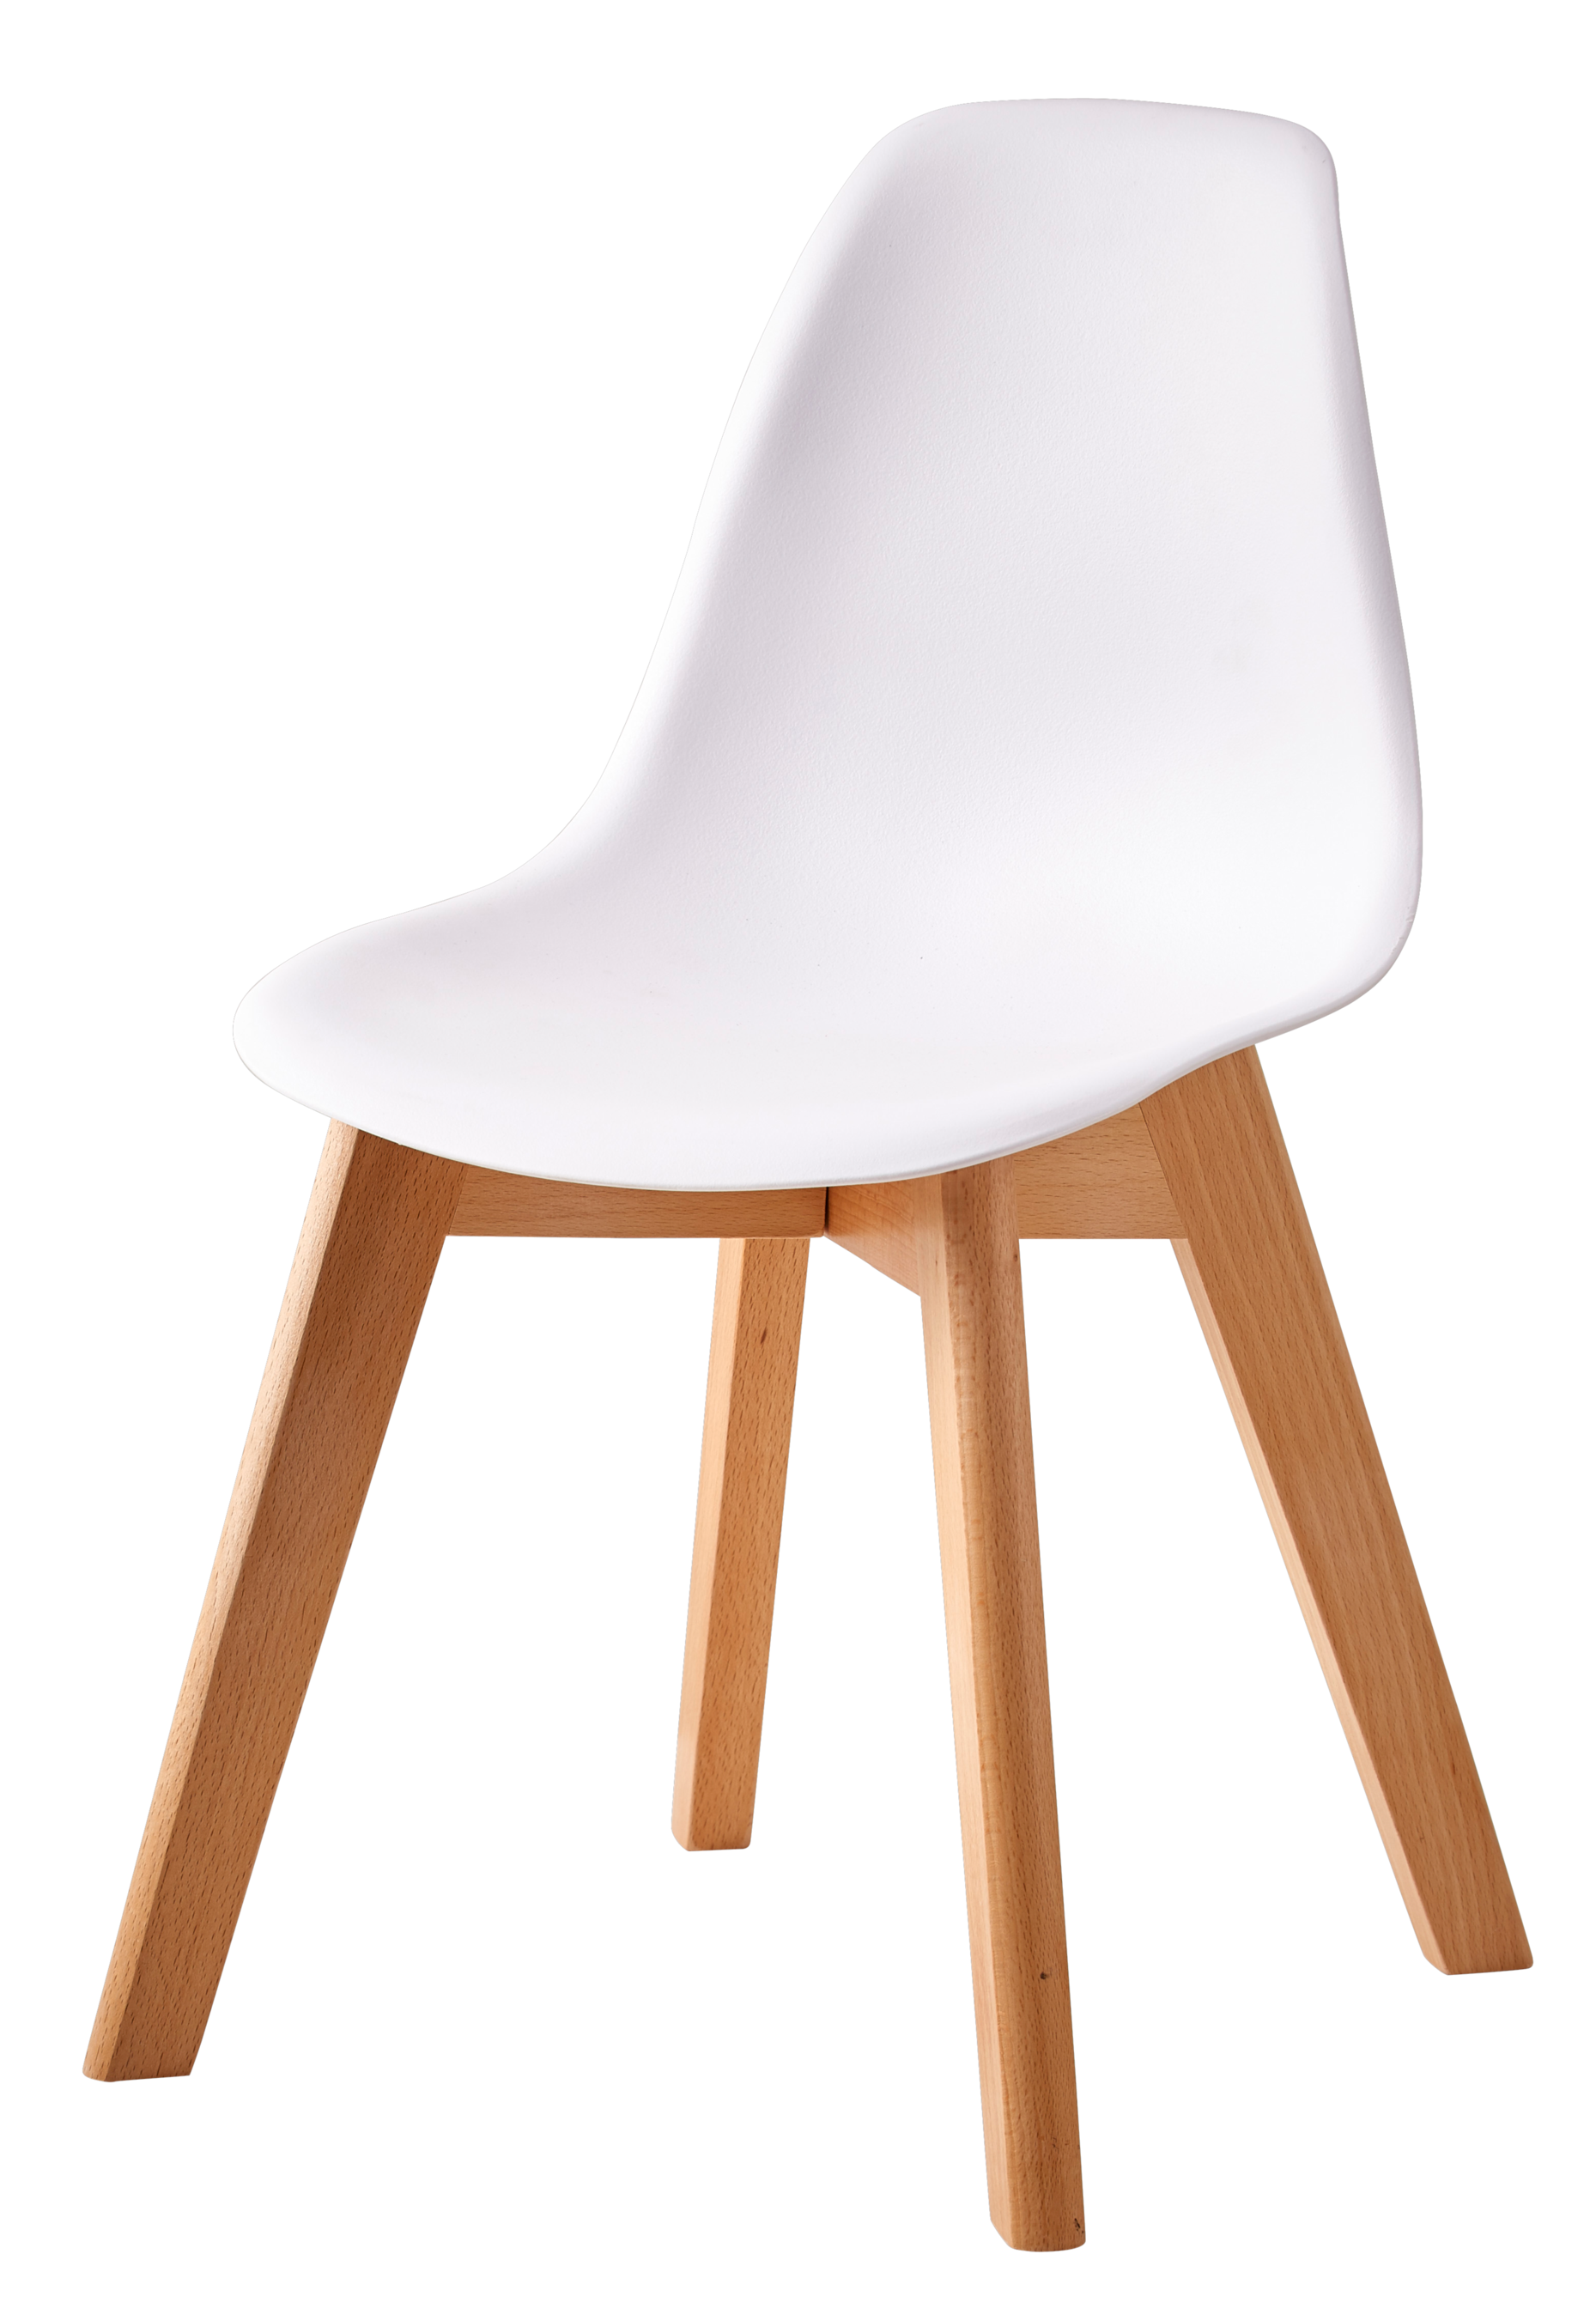 Aanbieding van MATHIAS Kinderstoel wit, naturel voor 34,95€ bij Casa